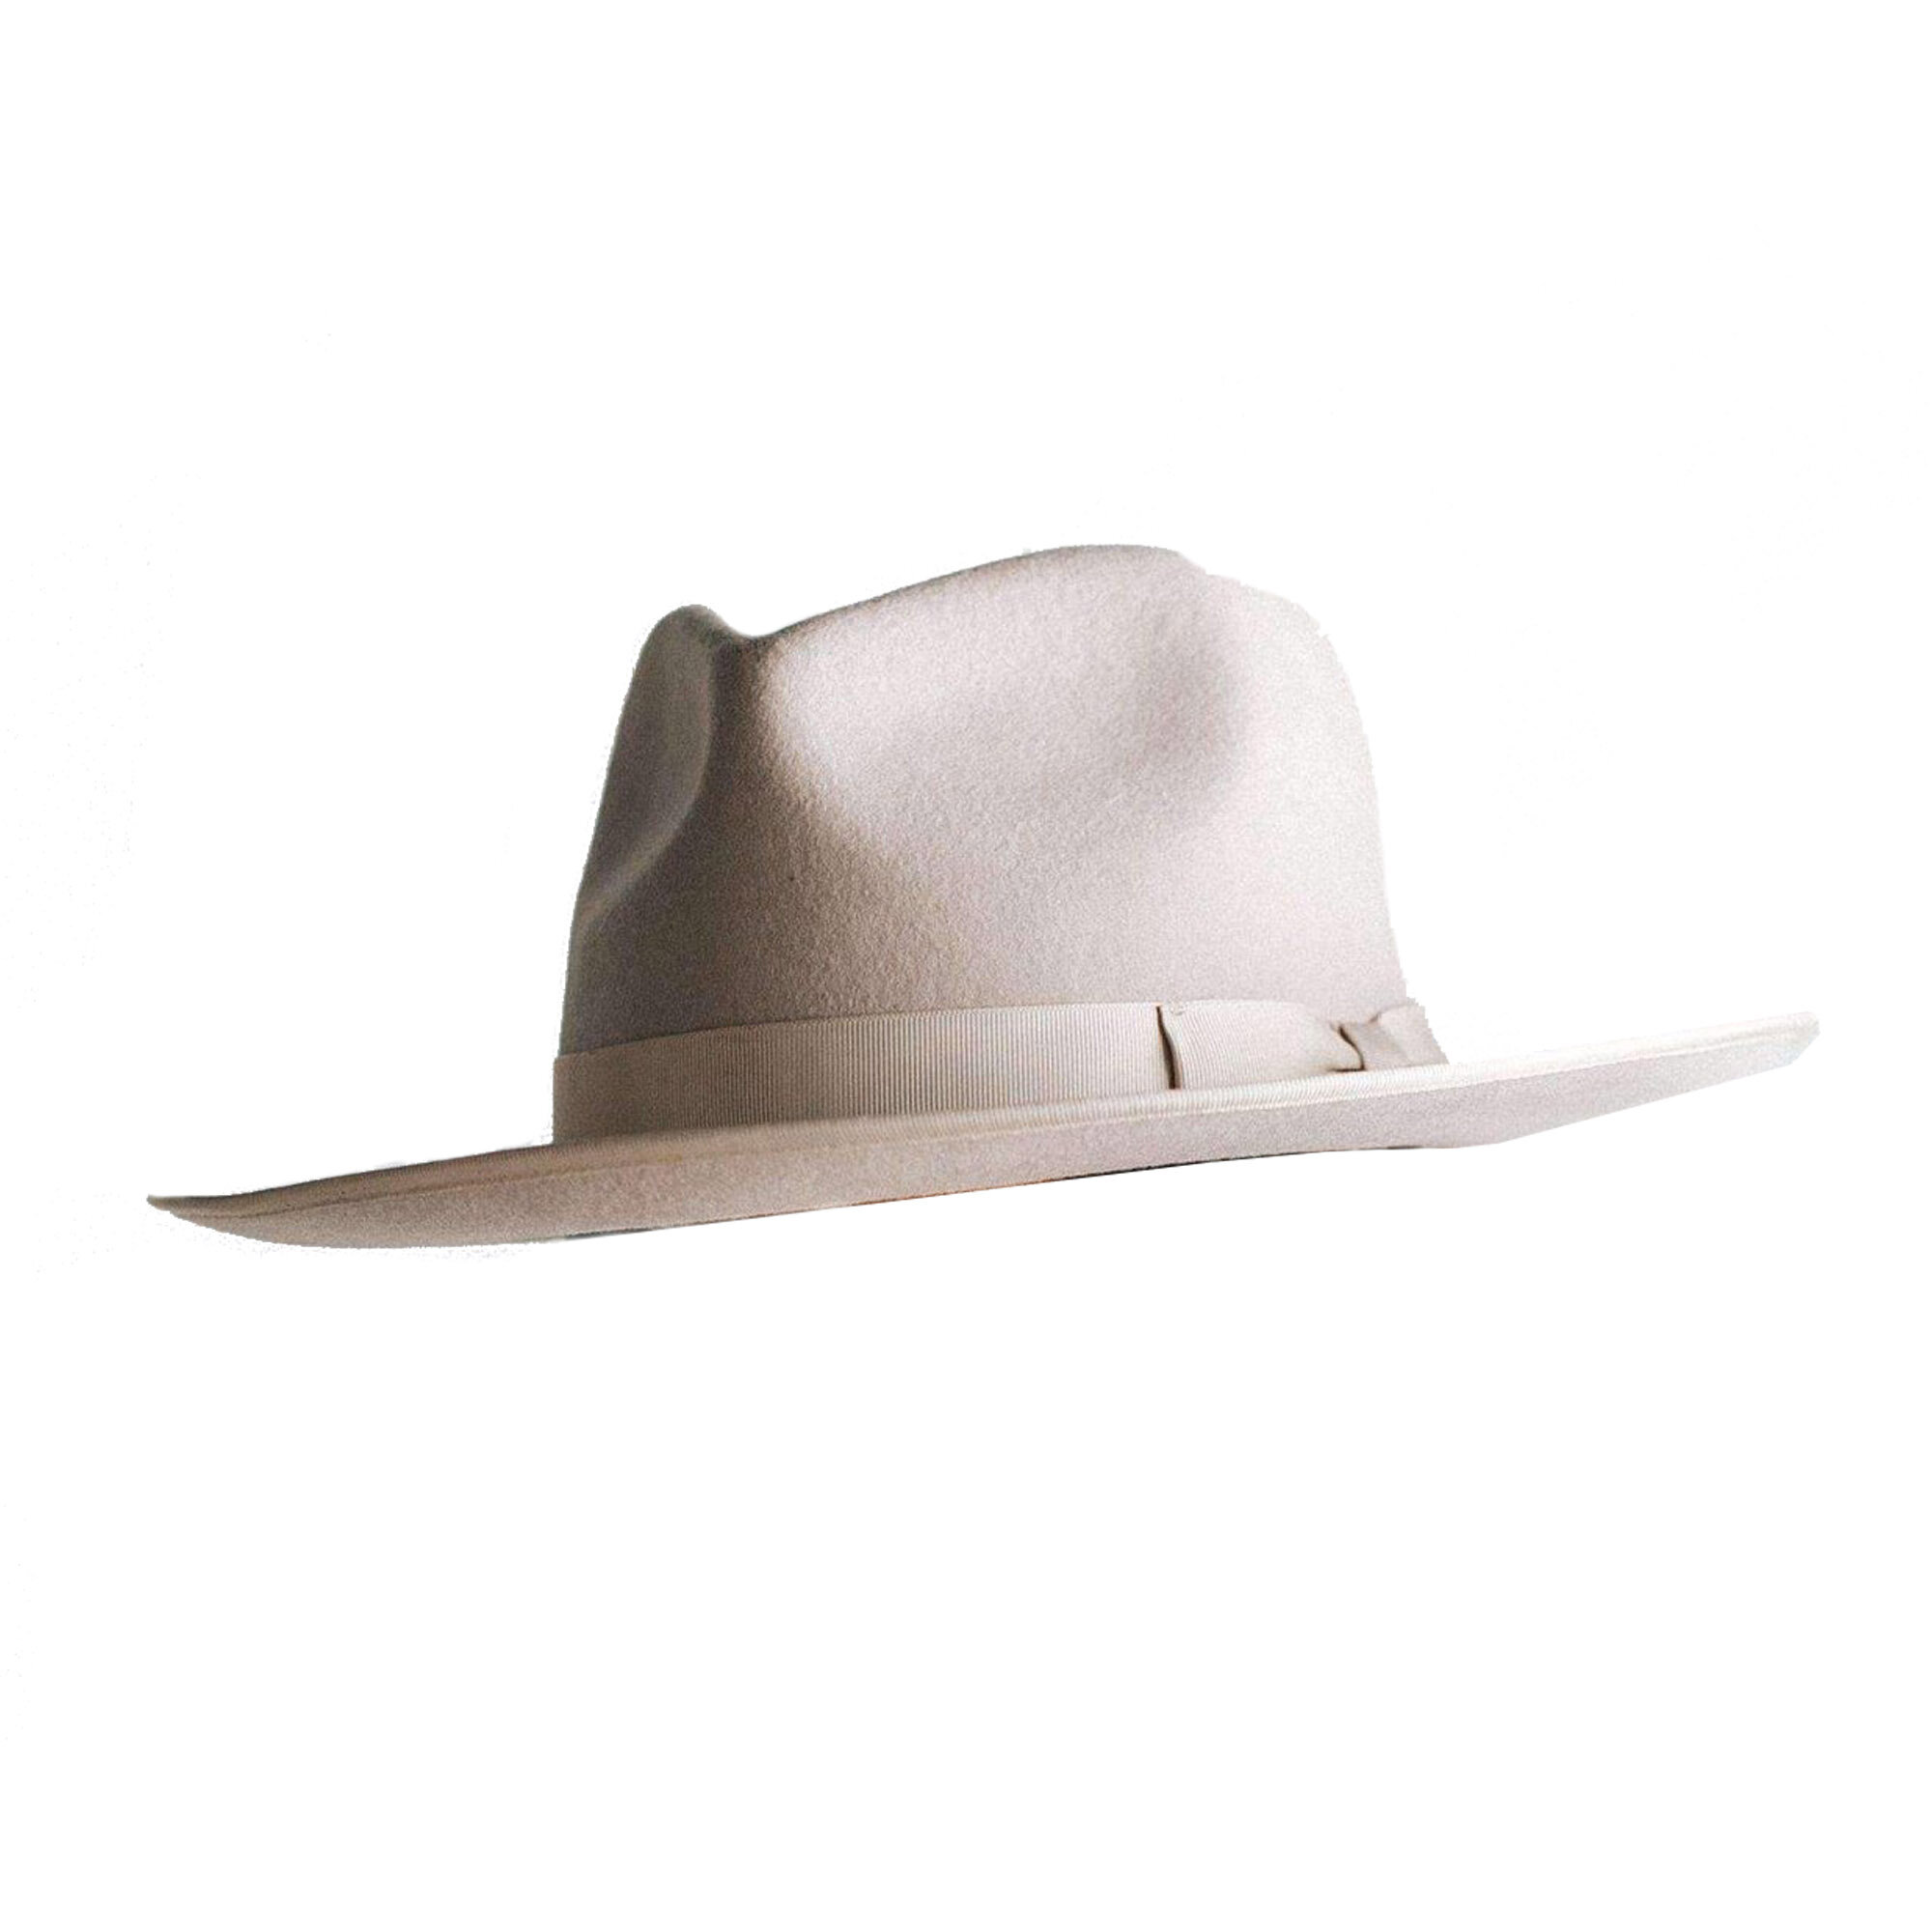 monroe-rancher-ivory-felt-hats-2_2000x copy.jpg